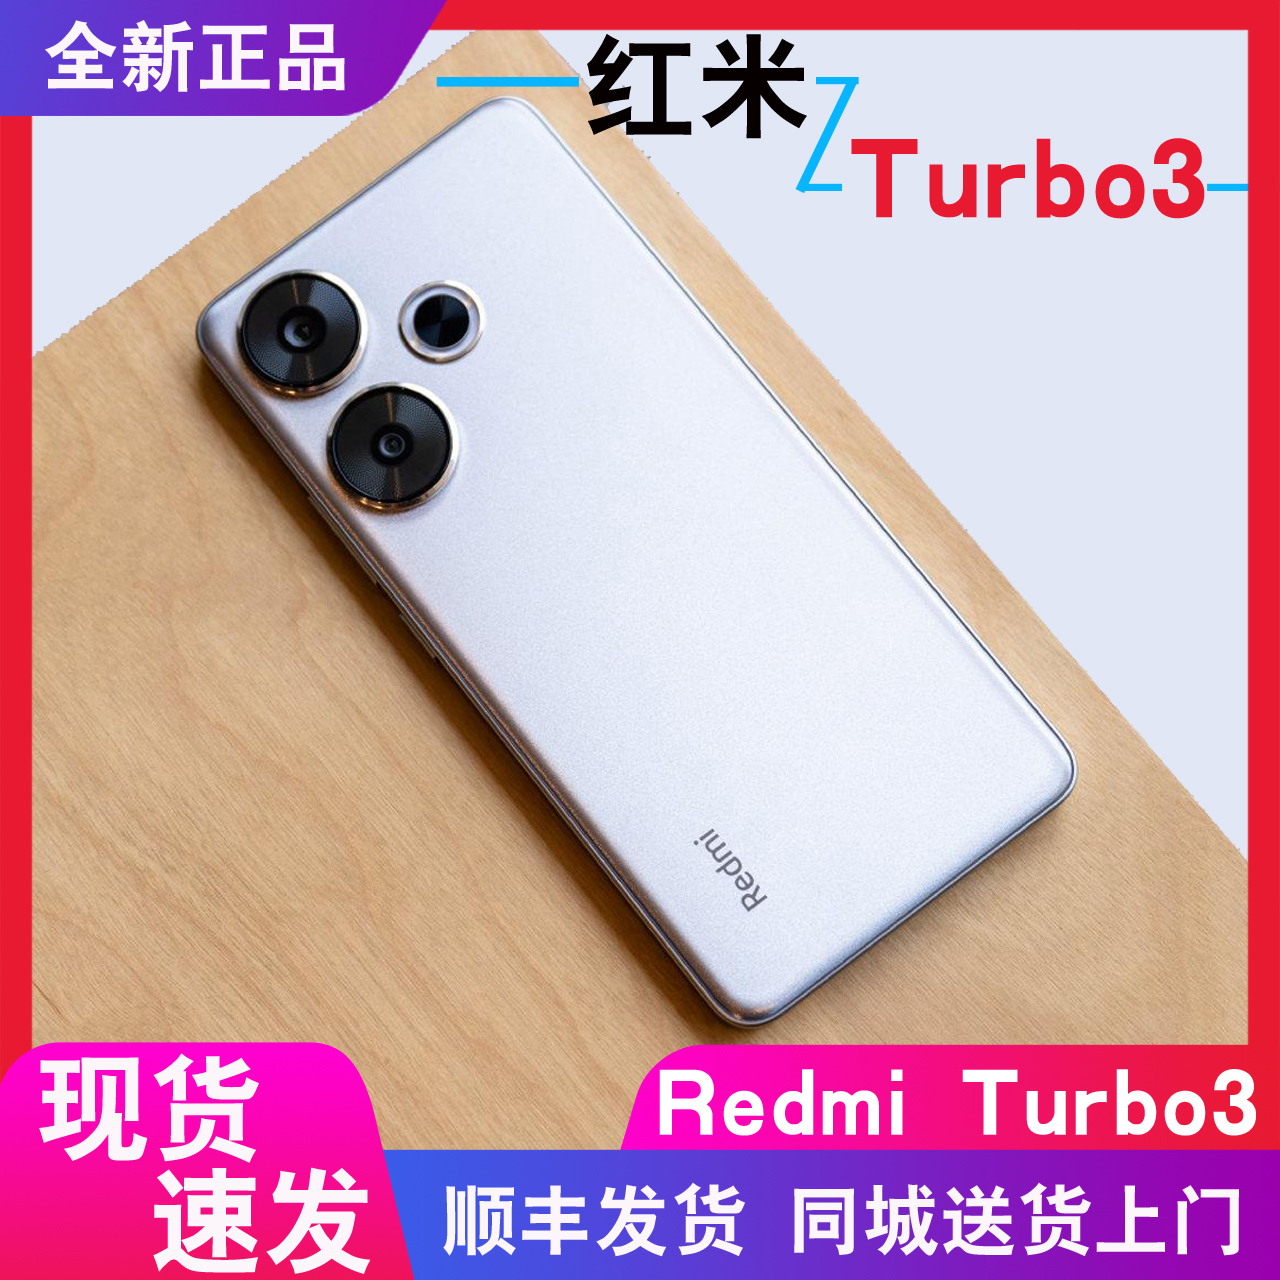 红米tubro3现货+分期付款MIUI/小米 Redmi Turbo 3正品手机小金刚